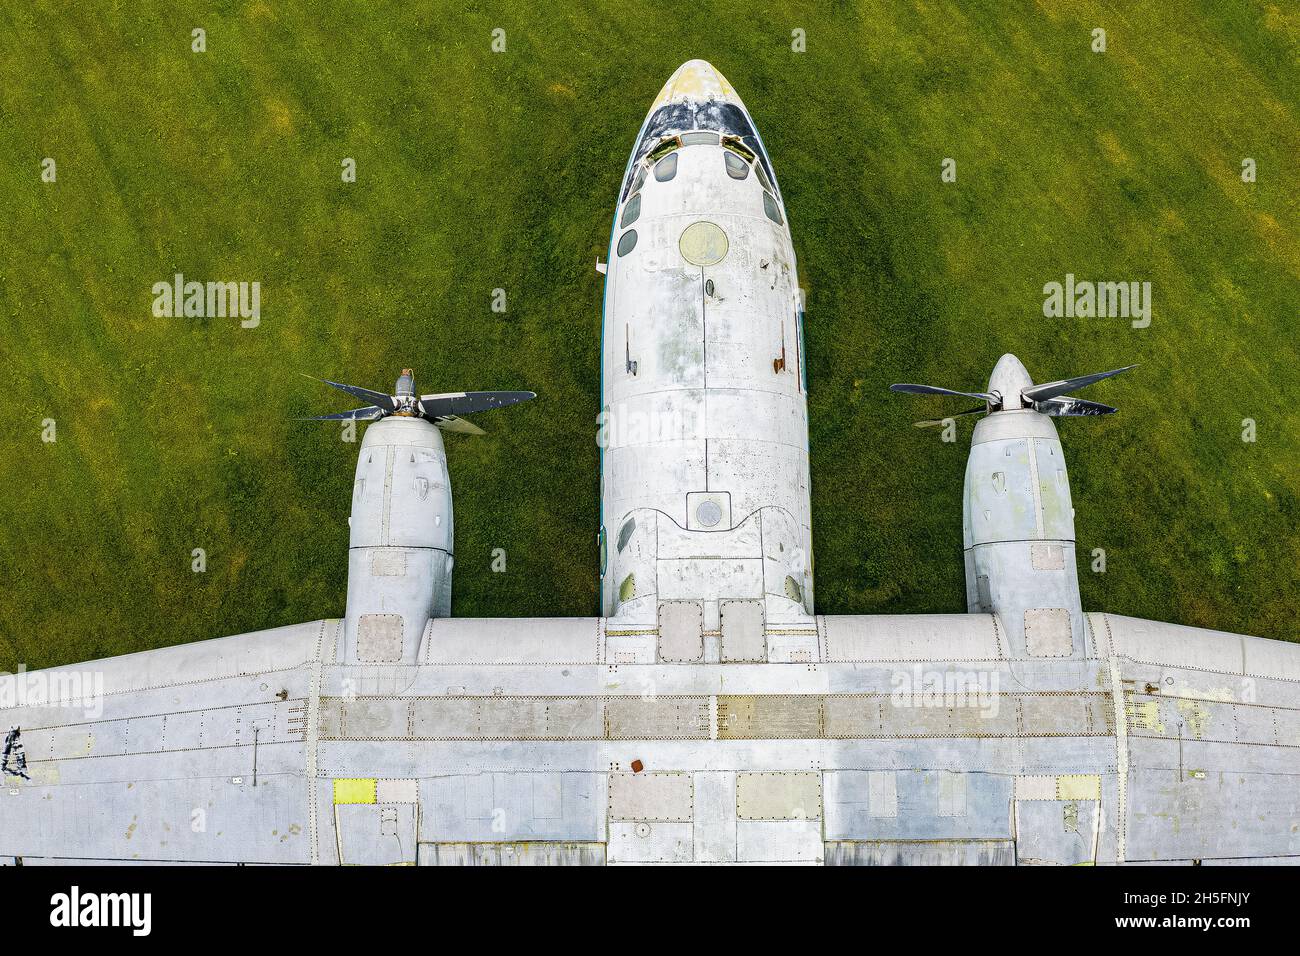 Flugzeug aus der Luft fotografiert | Airplane aerial view Stock Photo